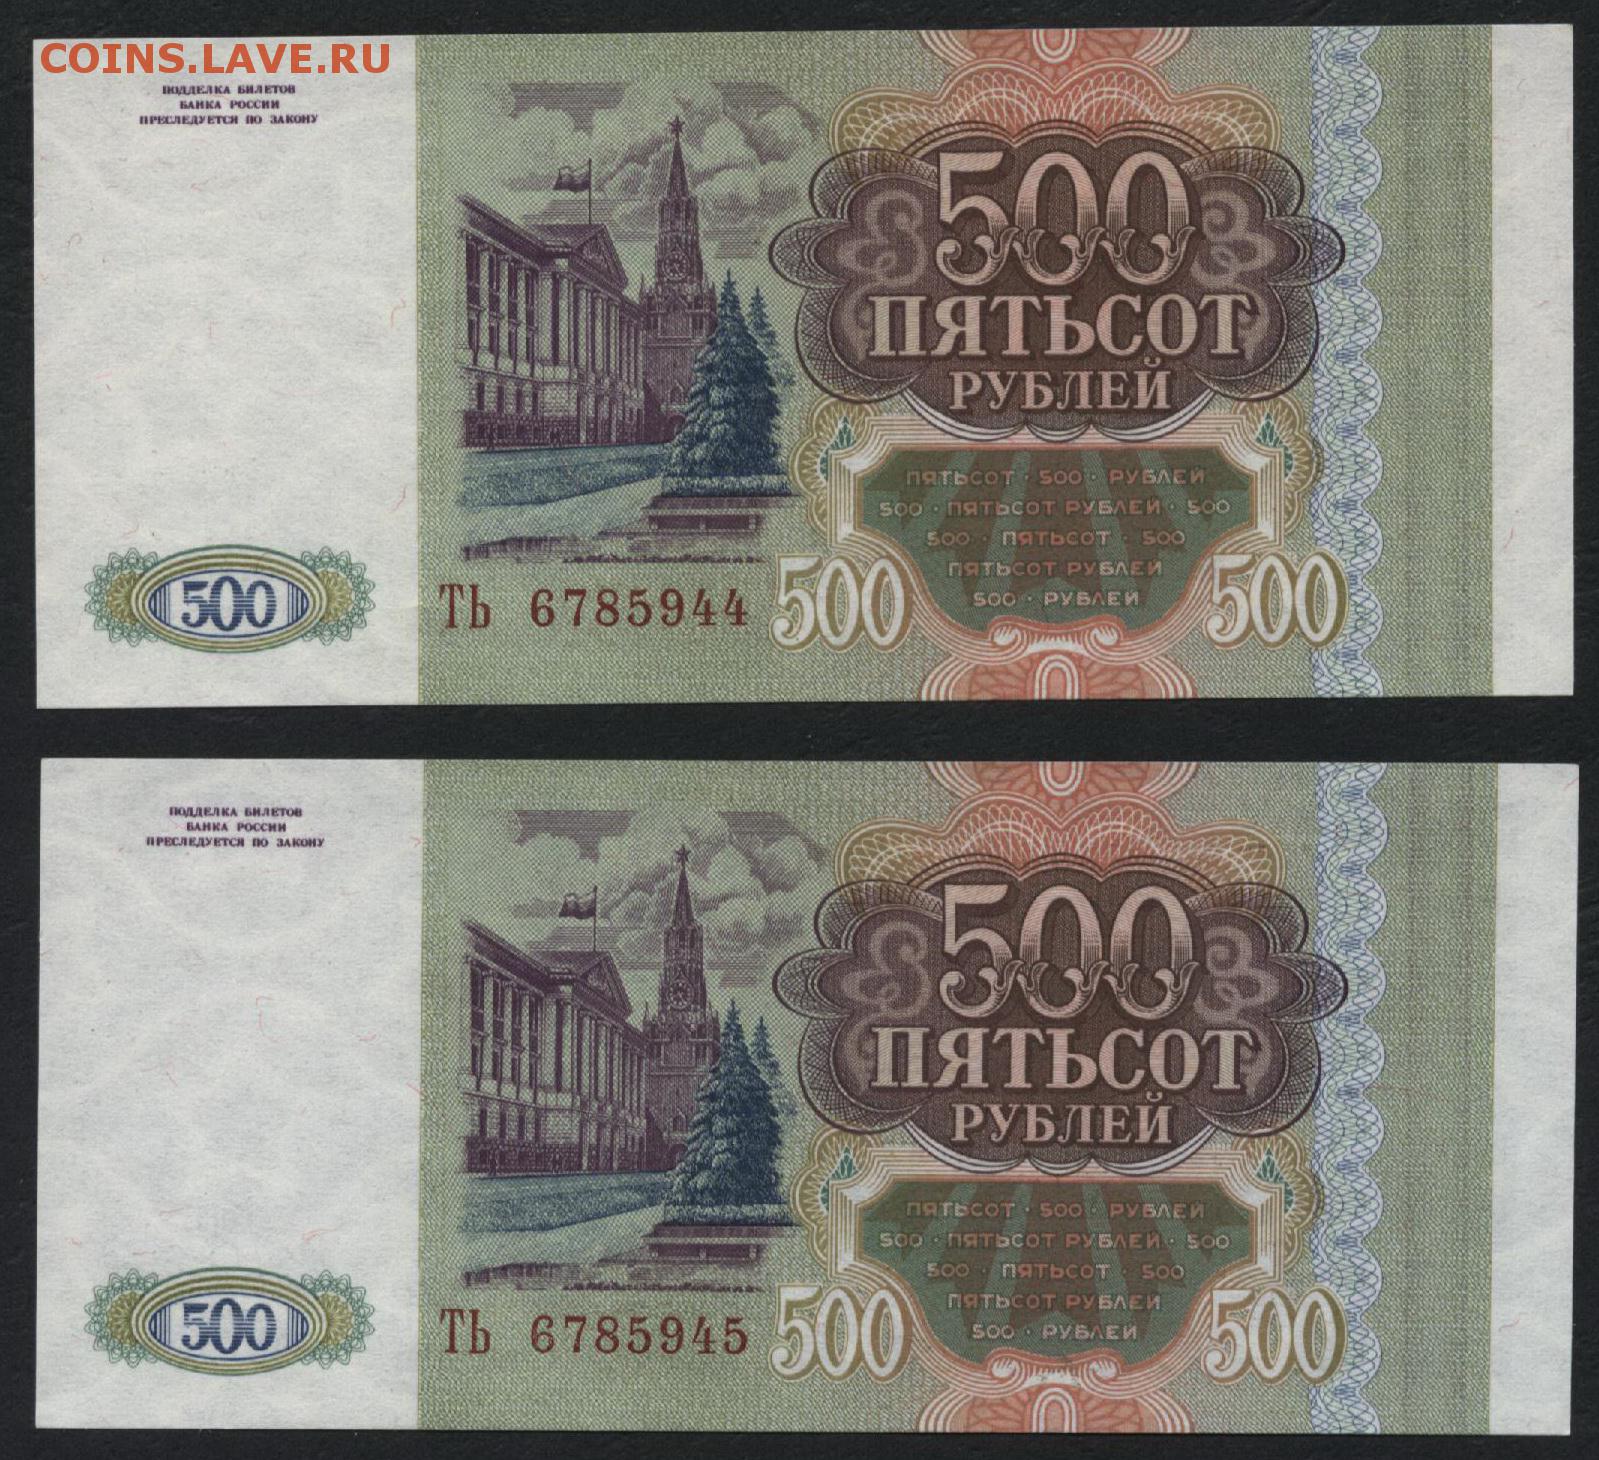 Две 500 в рублях. 500 Рублей. 500 Рублей 1993. Пятьсот рублей 1993. 500 Рублей 1993 года.